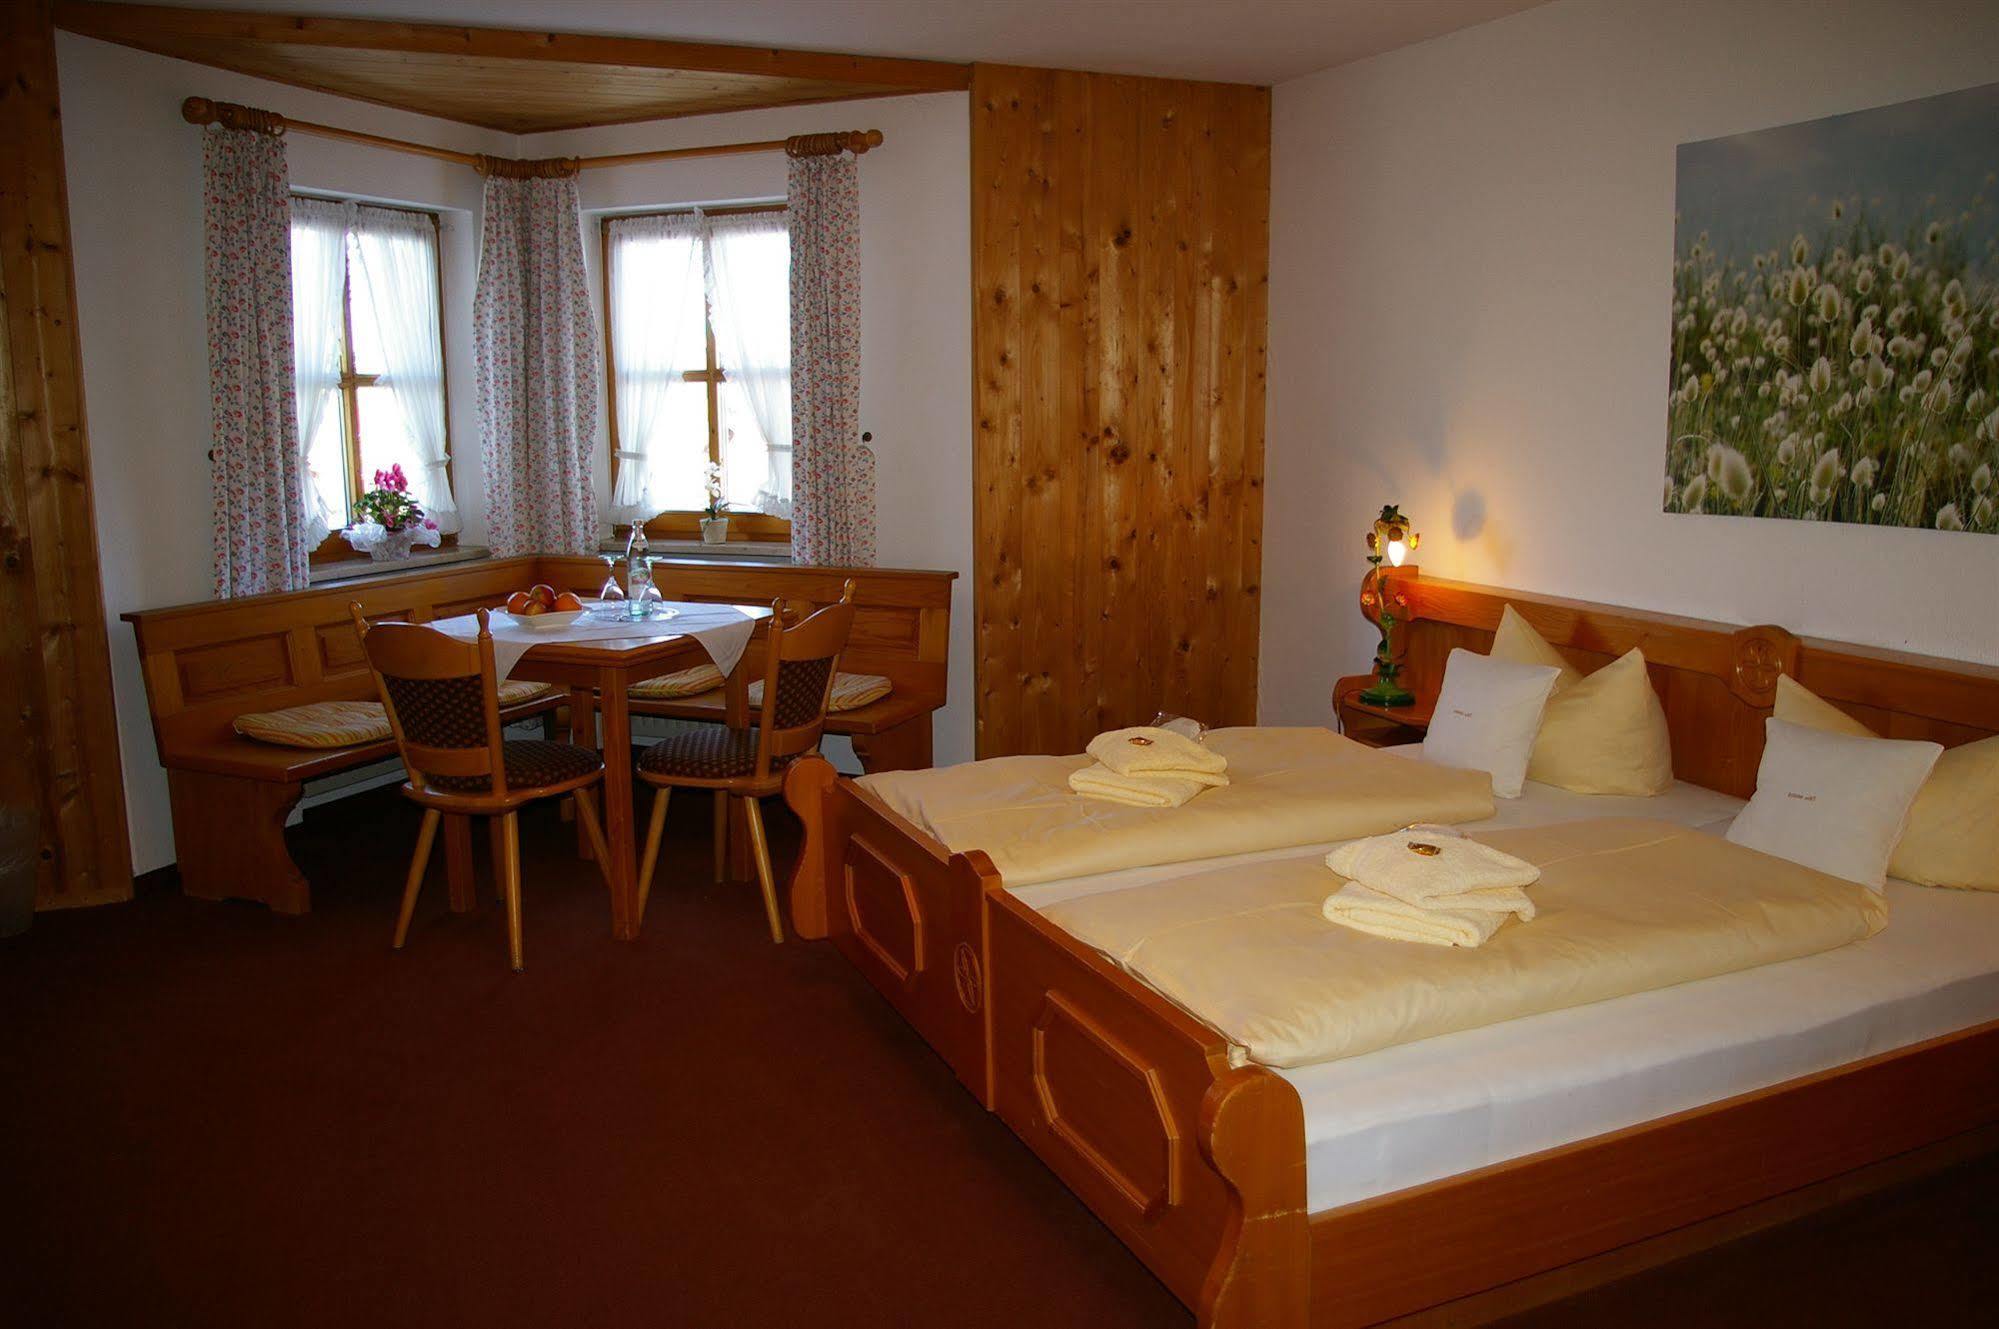 Hotel Landgasthof Goldener Pflug Frasdorf Zewnętrze zdjęcie